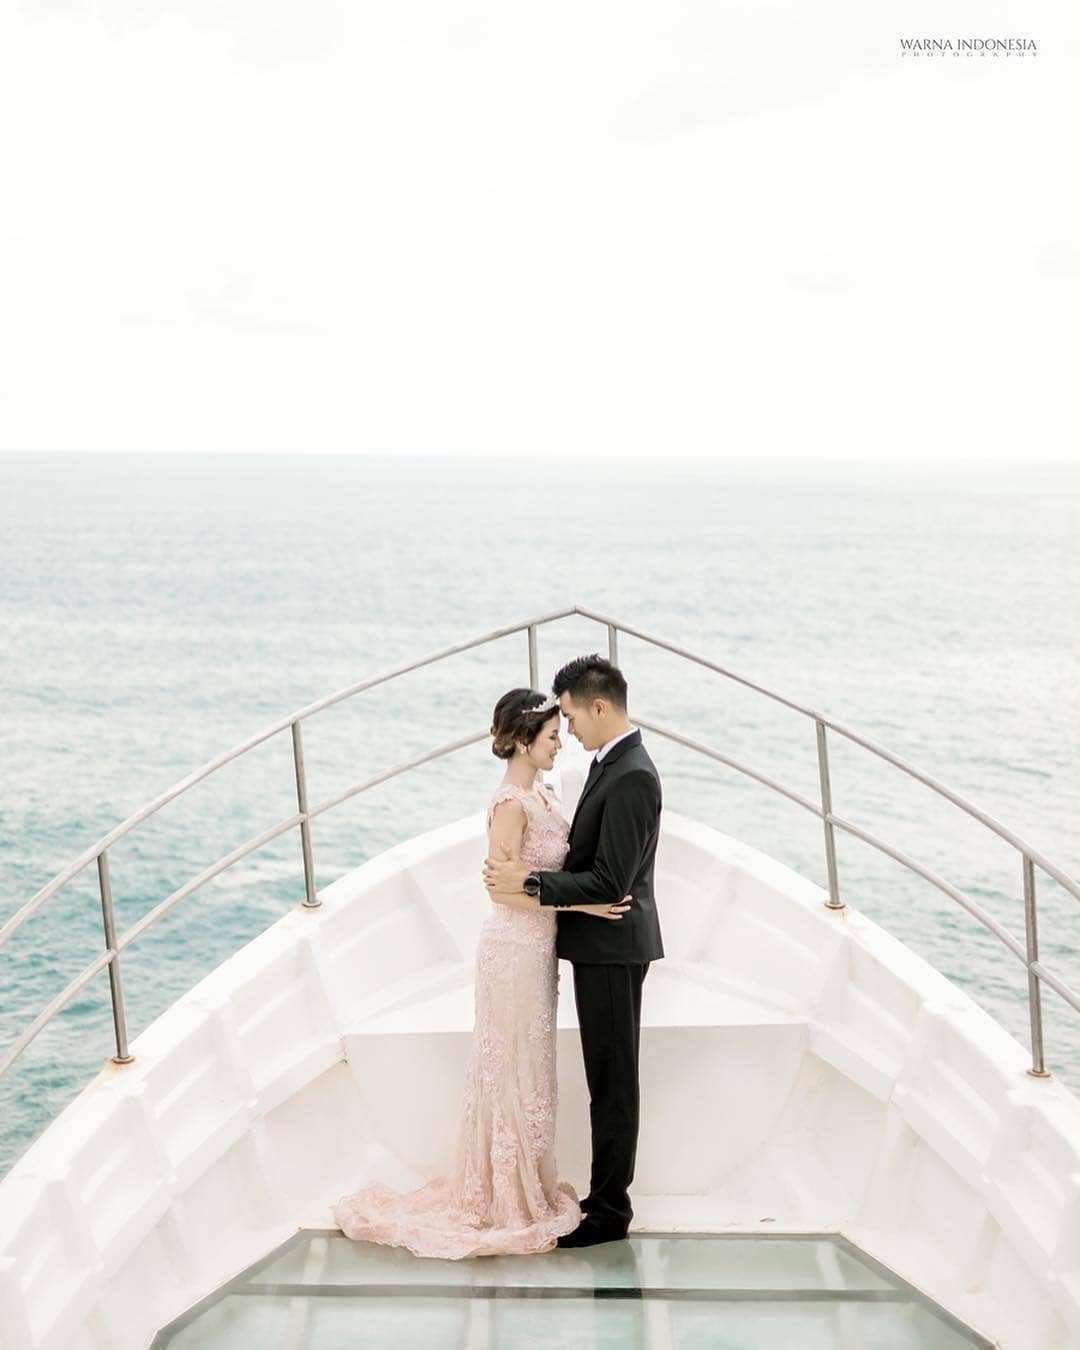 Prewedding di Glass Boat Teras Kaca Pantai Nguluran, Image From @warnaindonesia